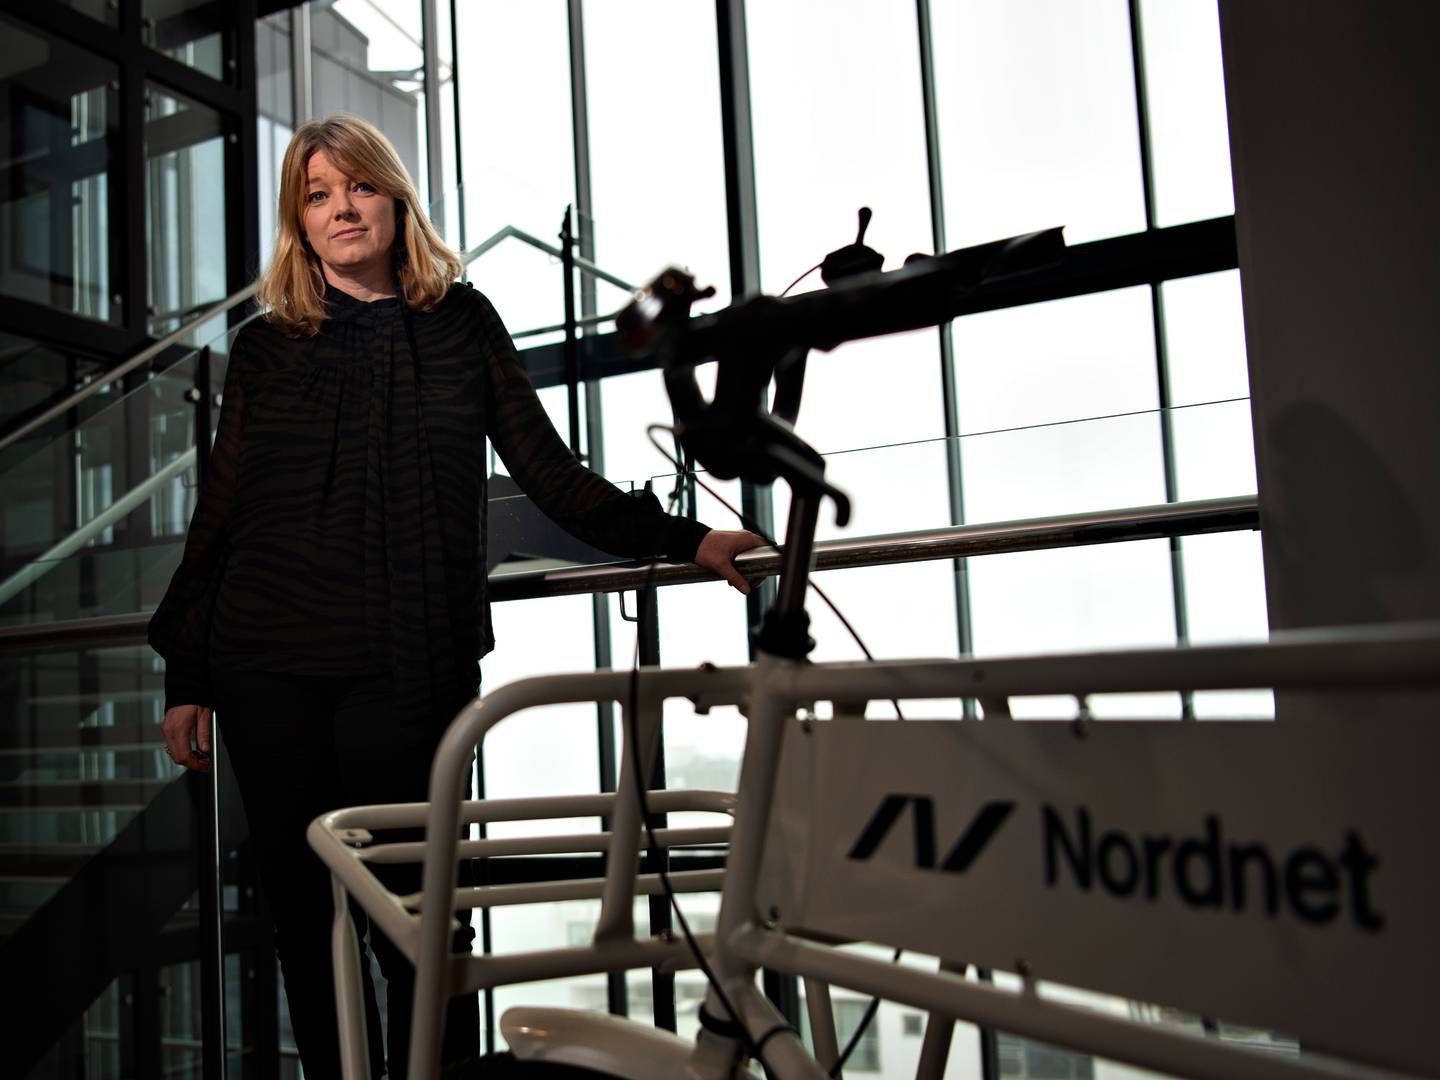 Anne Buchardt stopper som landechef for Nordnet i Danmark senere på ugen og afløses af Brian Buus Madsen, der bliver fungerende landechef. | Foto: Brian Karmark